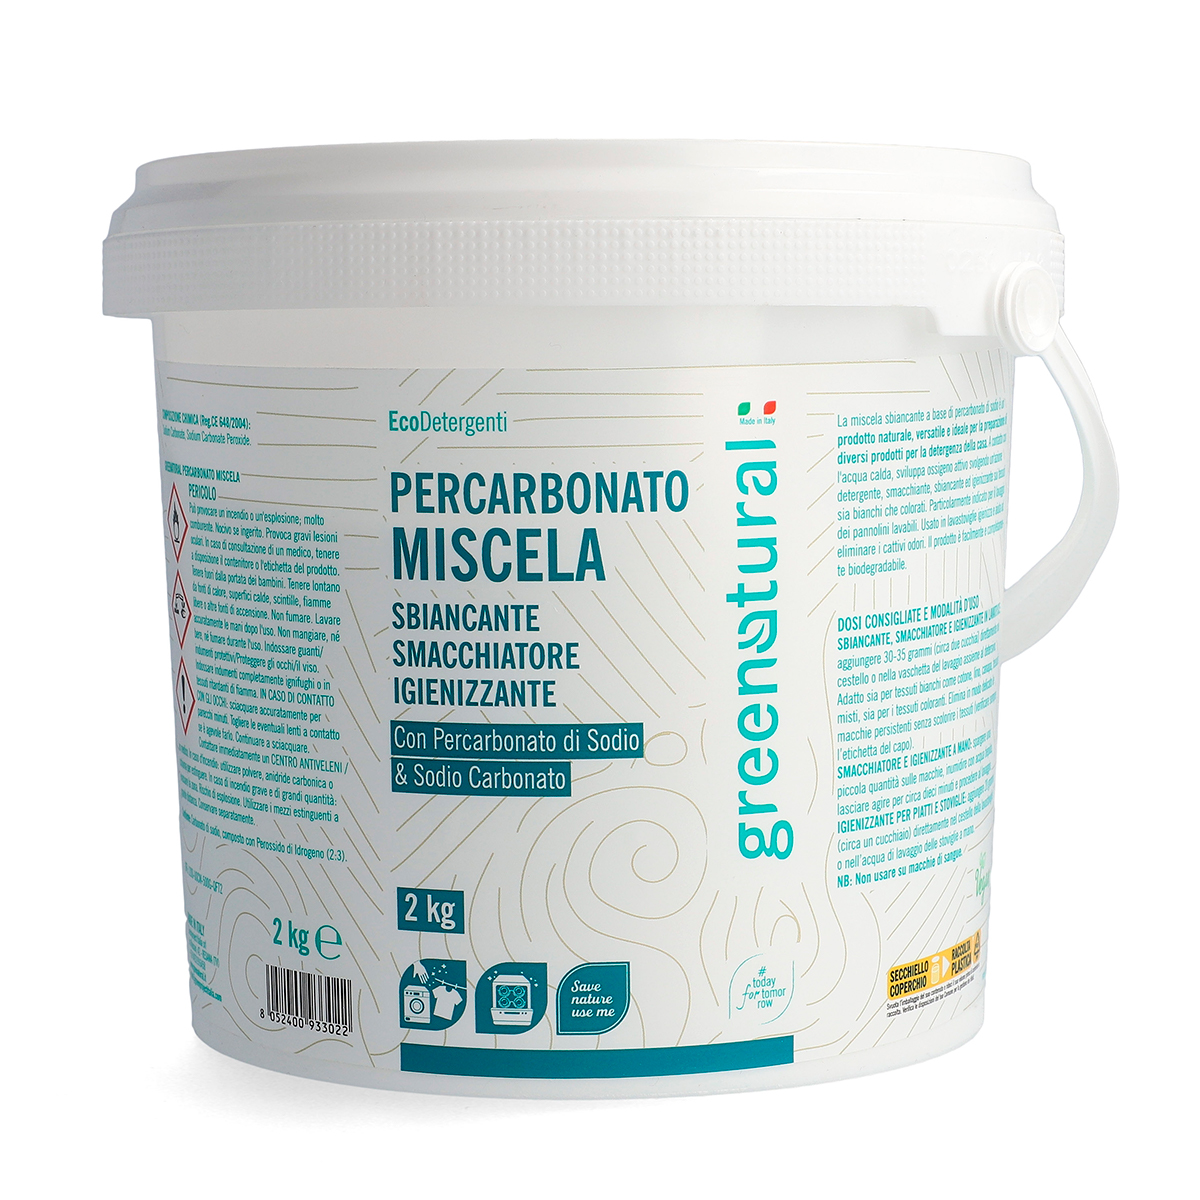 Percarbonato Miscela - Greenatural - Detergenza e Cosmetica Naturale - Sito  Ufficiale